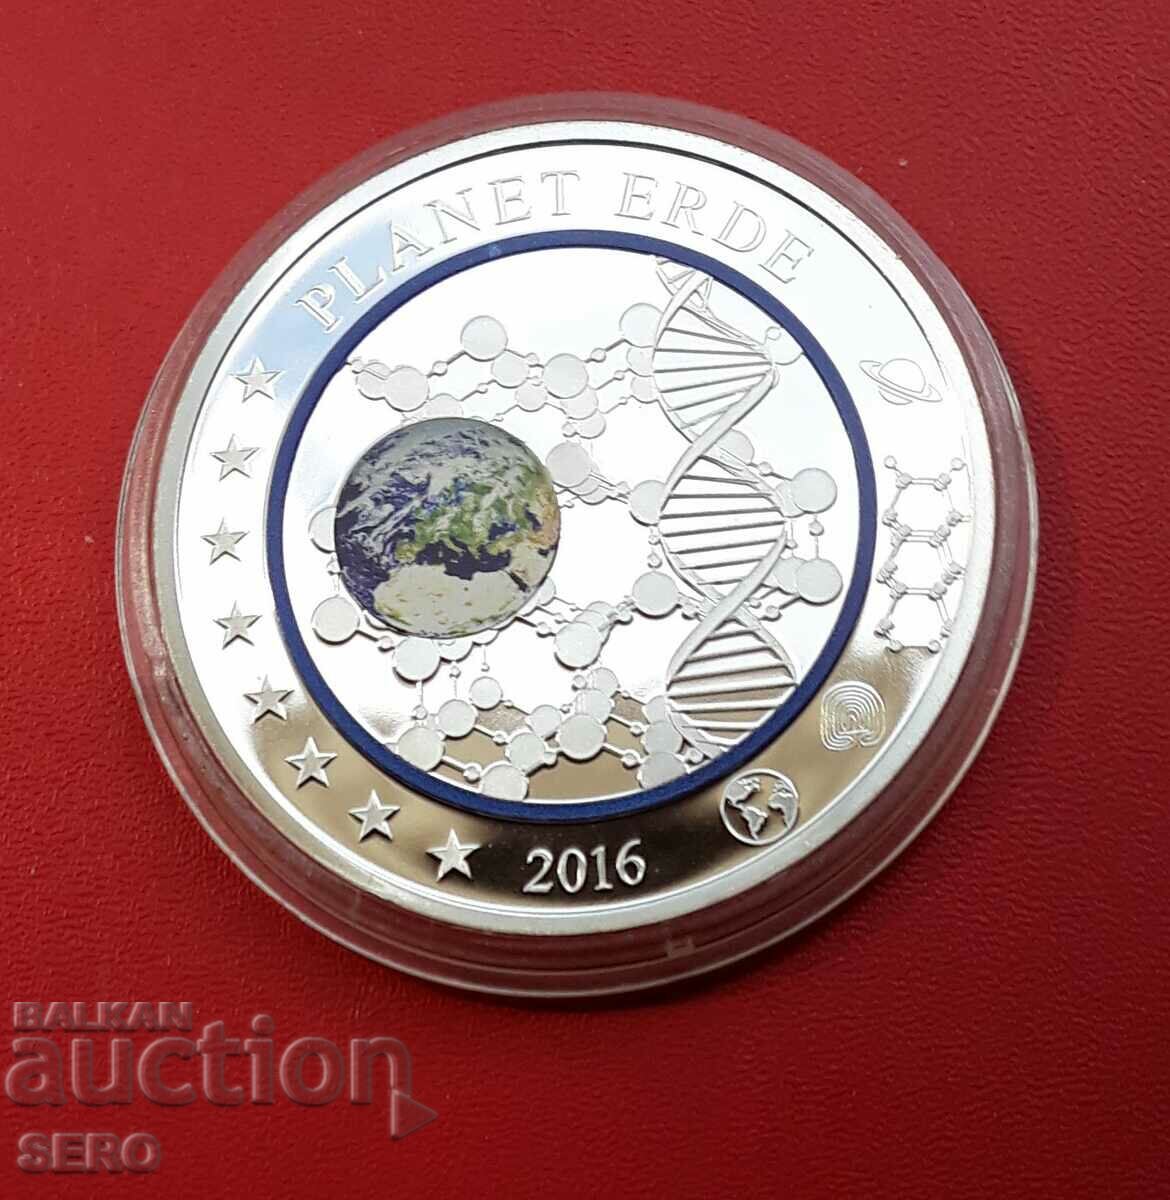 Γερμανία-μετάλλιο 2016 - πλανήτης Γη-ασημί